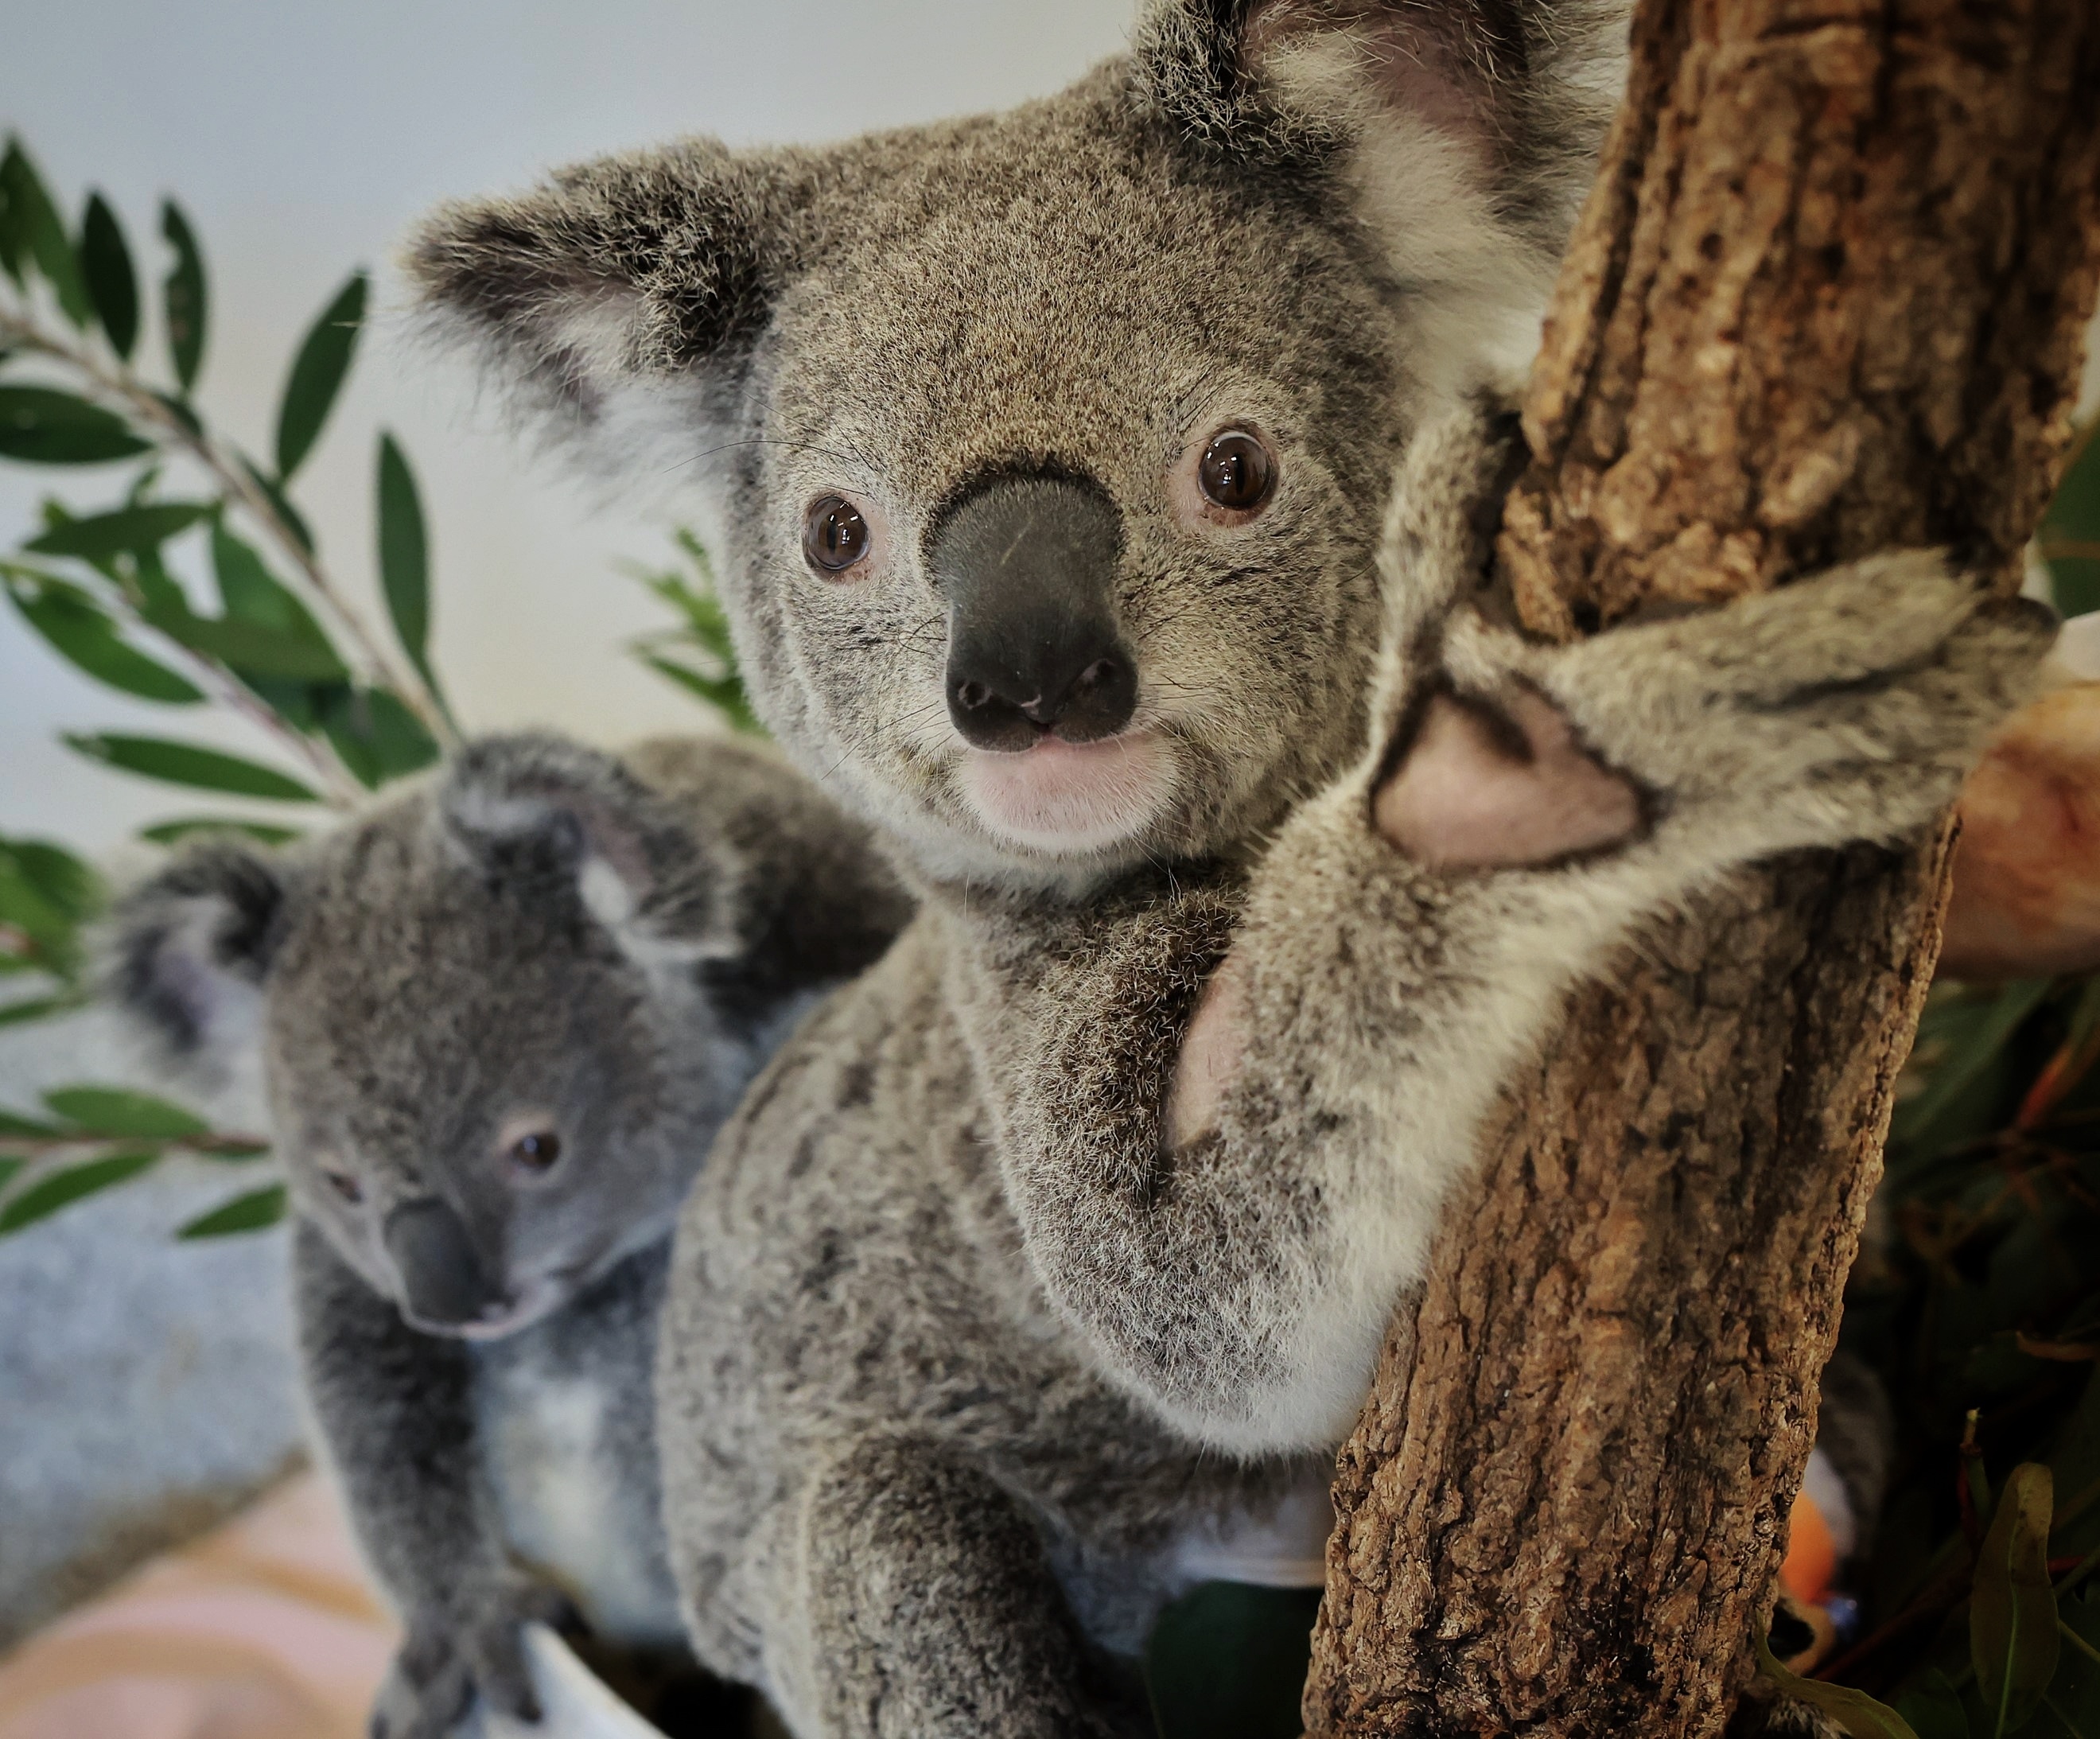 Good news for Bluebell, Bottlebrush and other endangered koalas in new partnership